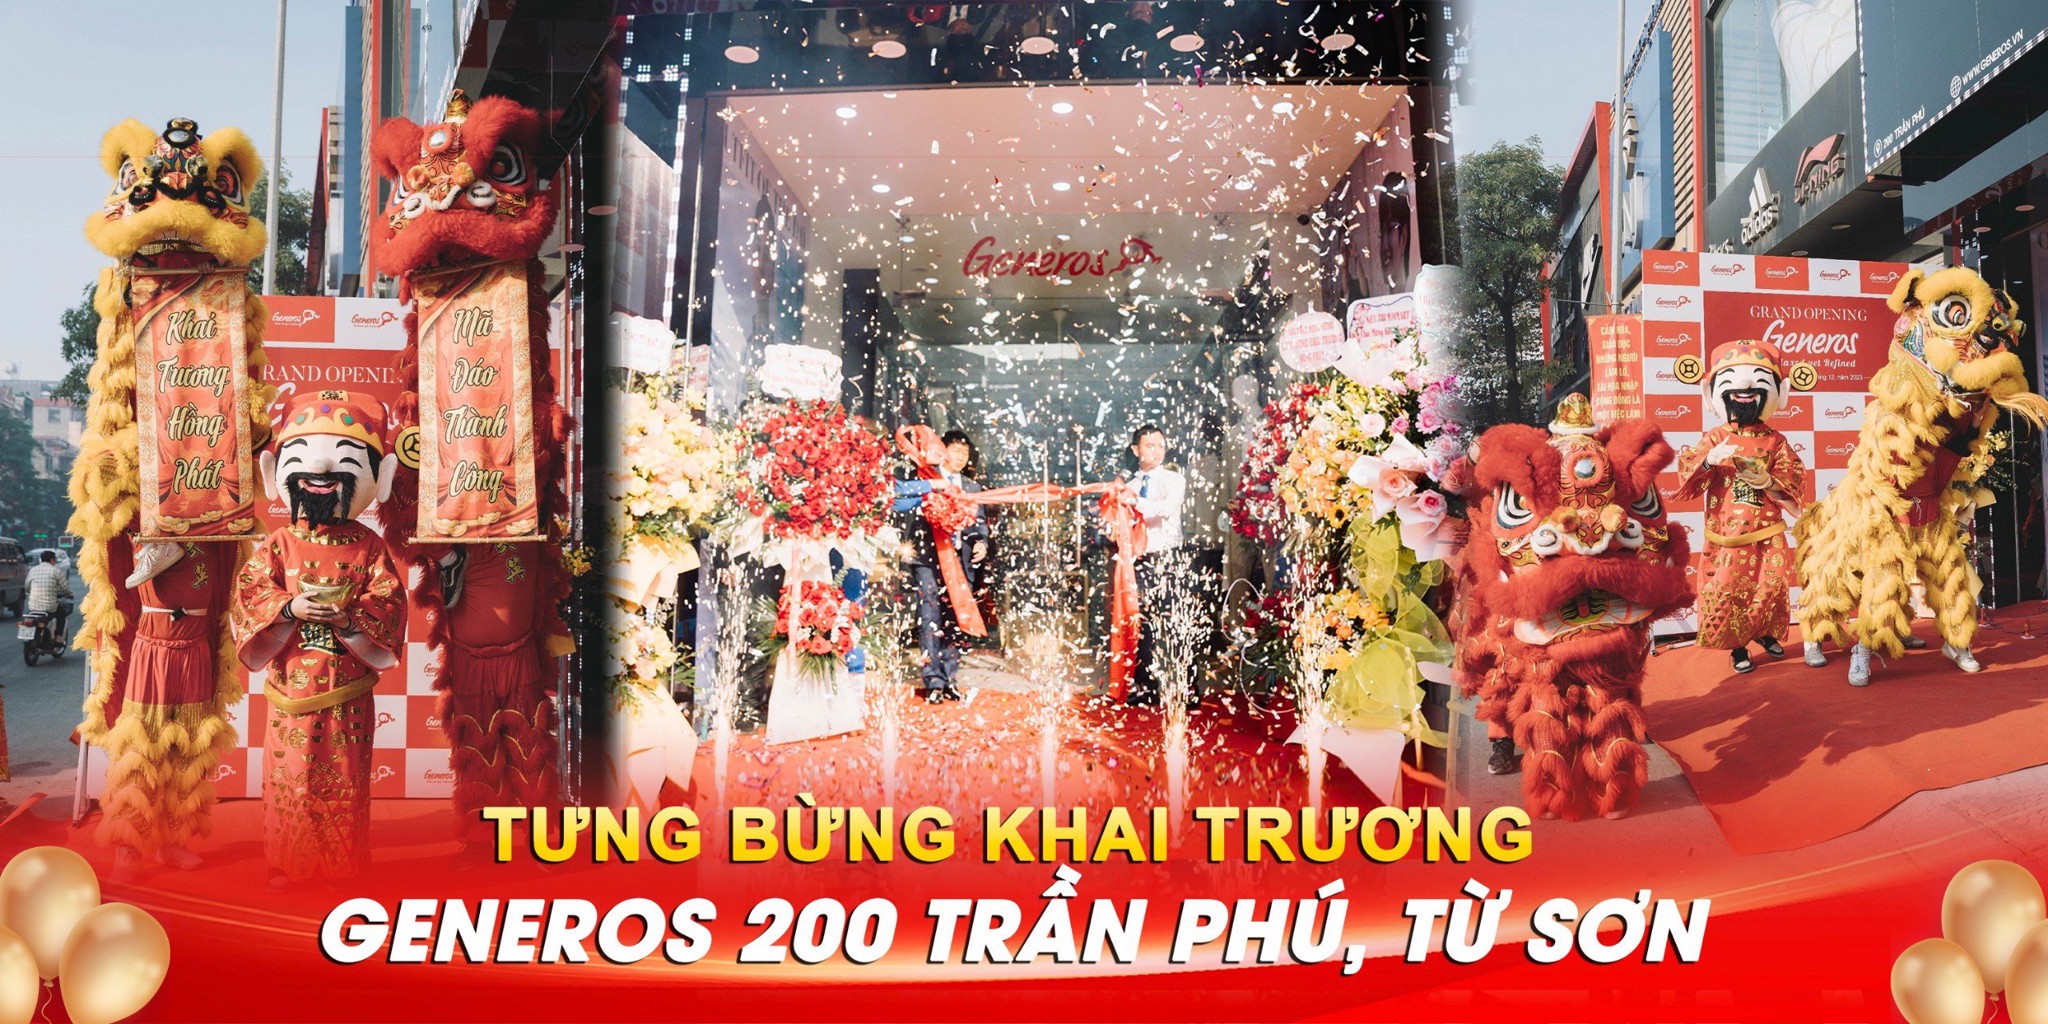 Khai trương Generos - 200 Trần Phú, Từ Sơn, Bắc Ninh